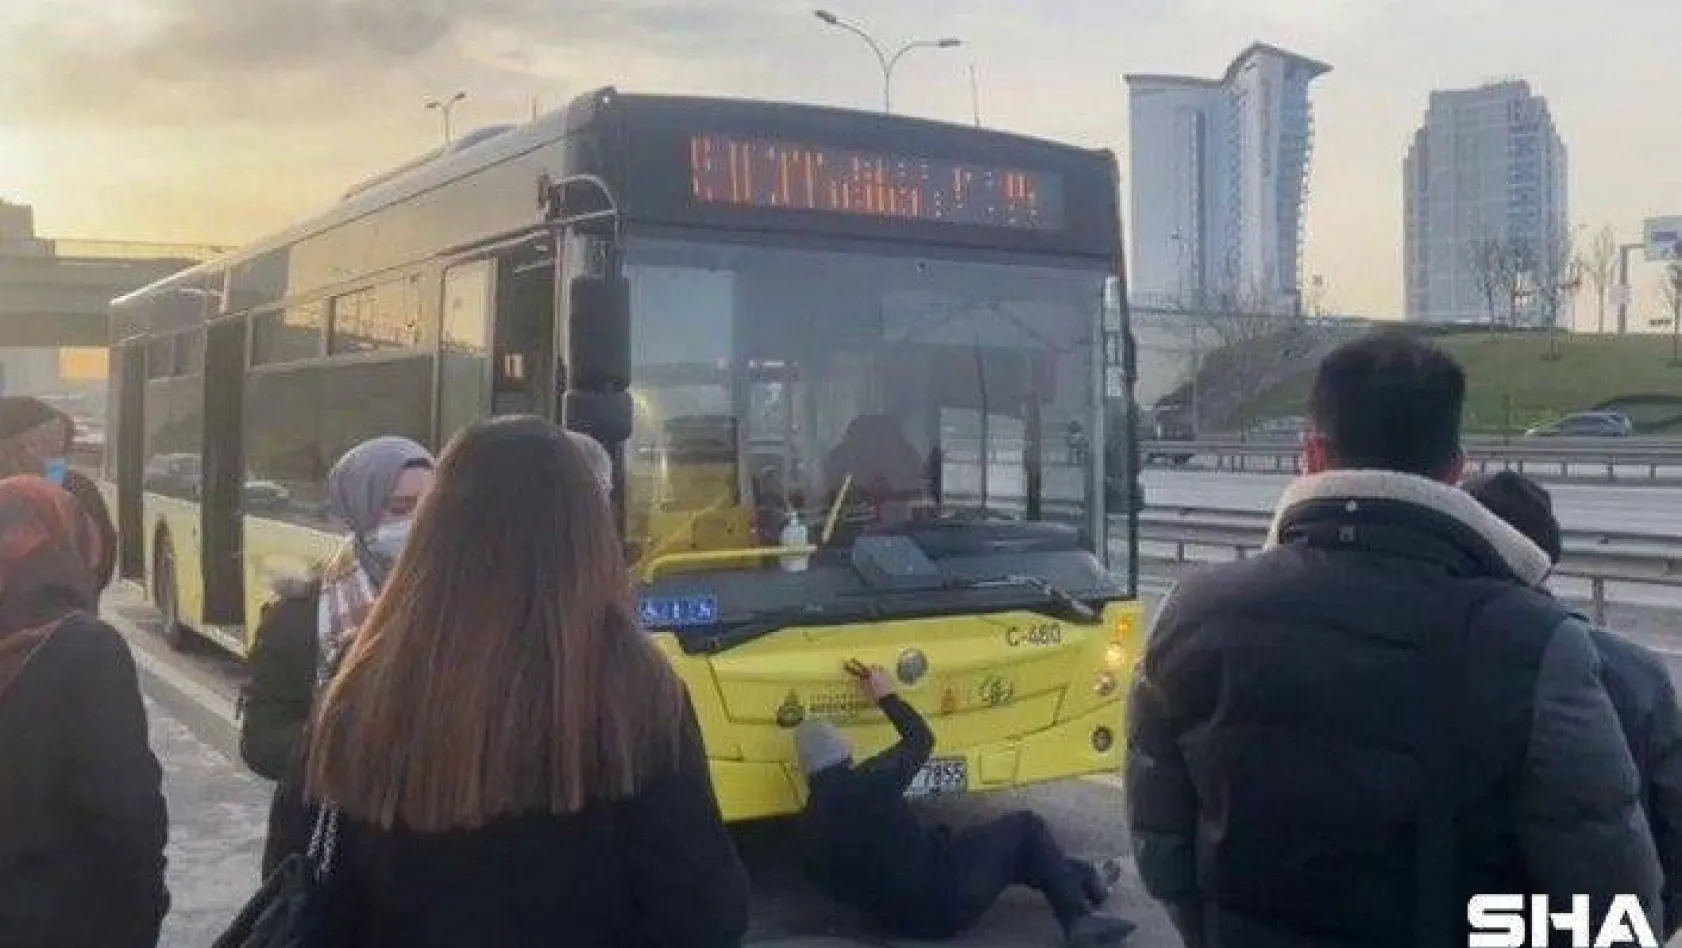 Üzerinde güneş batmayan İETT otobüsü '500T' yolda kaldı